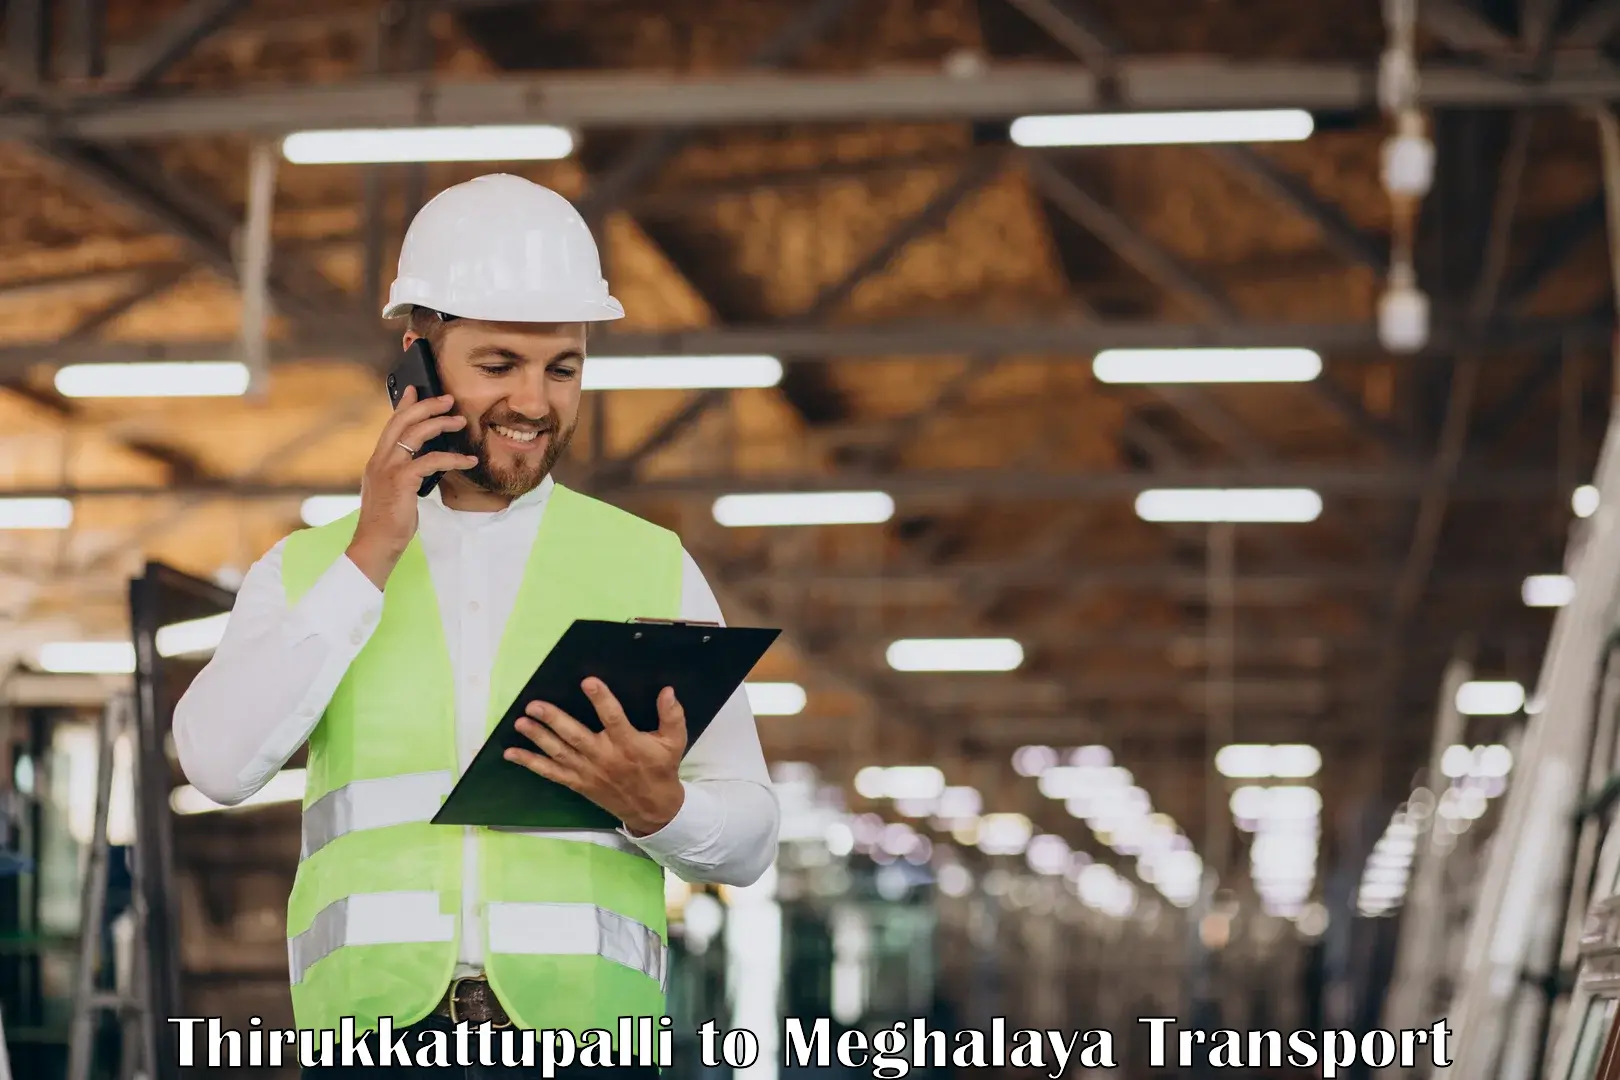 Nearest transport service Thirukkattupalli to Nongstoin